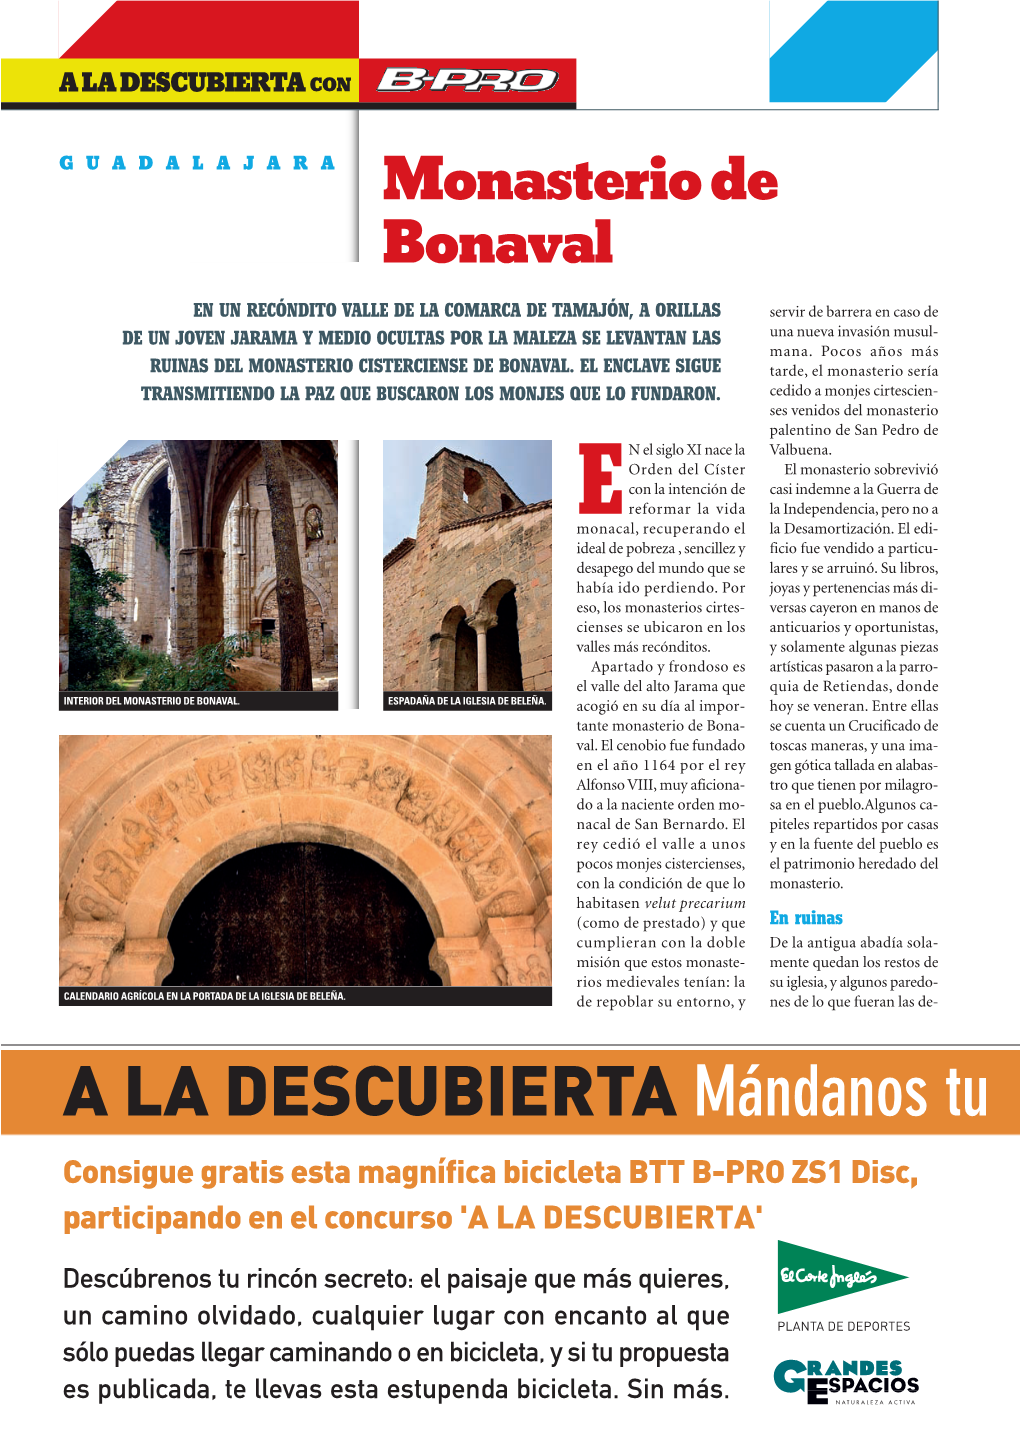 'A La Descubierta' De La Revista Grandes Espacios Nº127